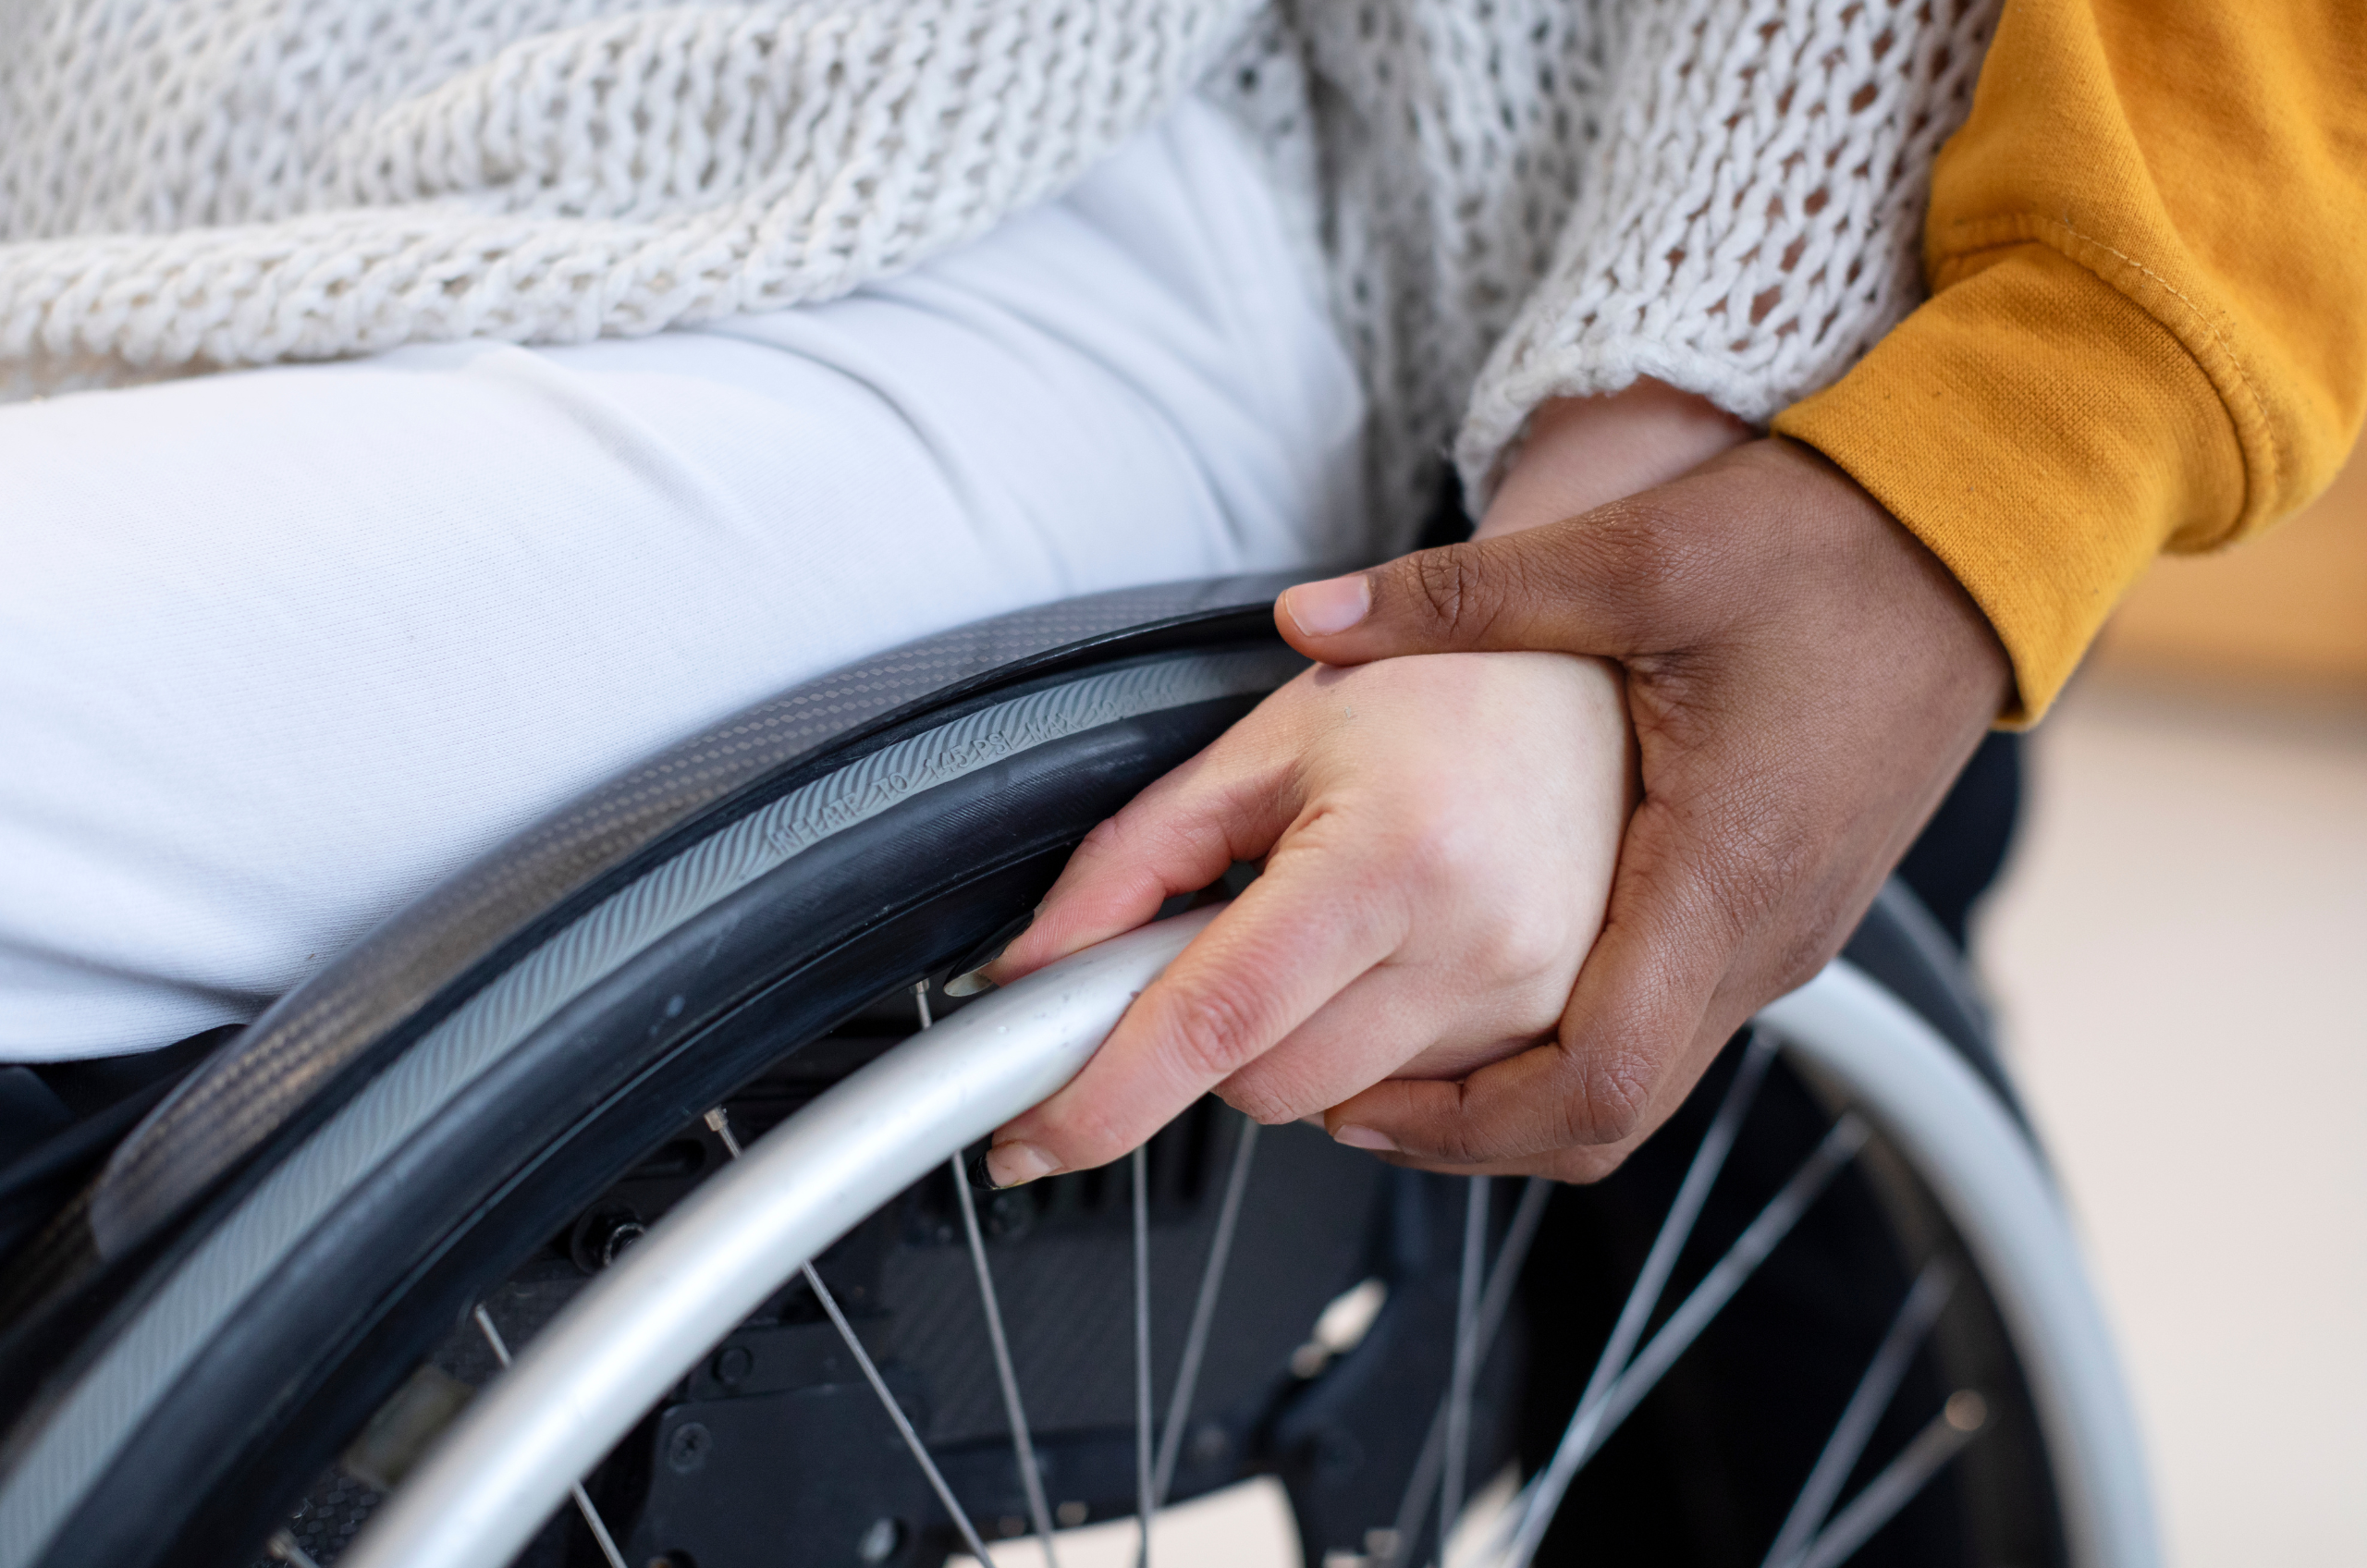 Durcal Blog - ¿Cómo acceder a la pensión por discapacidad total? Conoce cómo solicitarla y cuáles son los beneficios